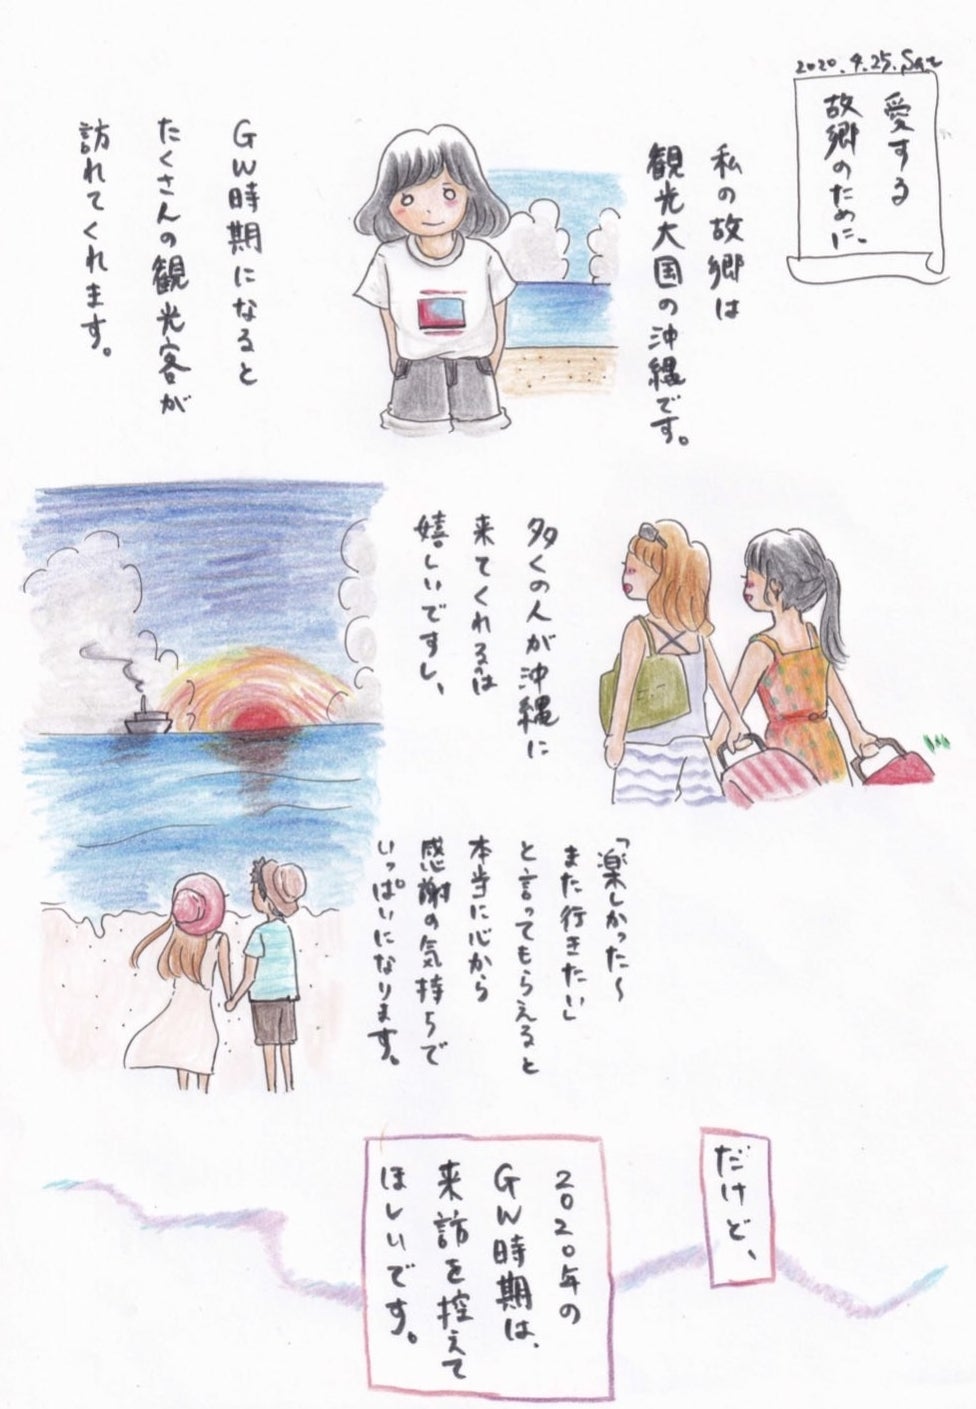 ごめんなさい 今は沖縄旅行しないで イラストを描いた女性の思い